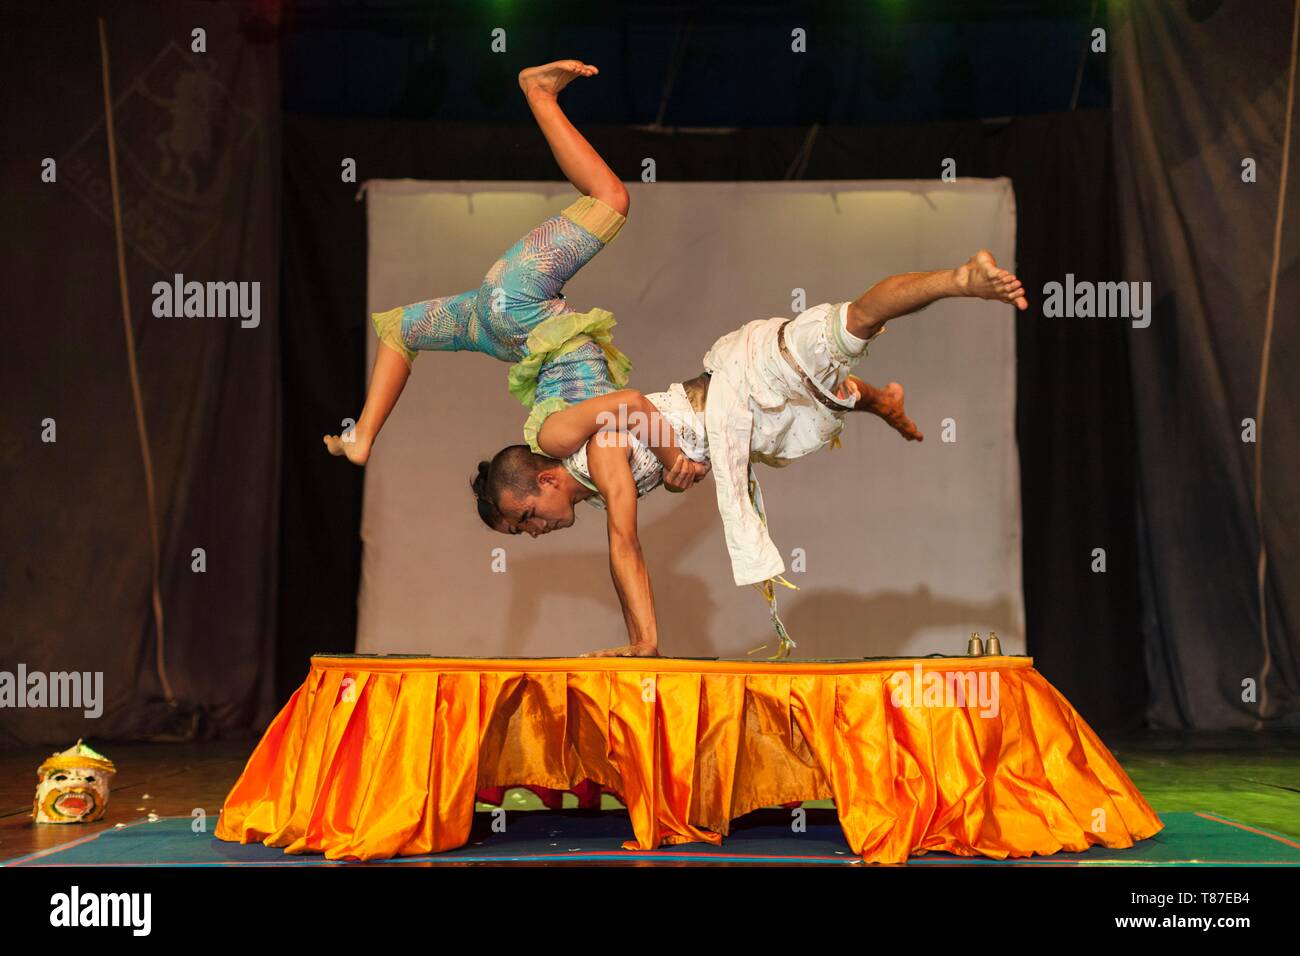 Cambodia, Battambang, Phar Ponleu Selpak, arts and circus school, acrobats during circus performance Stock Photo